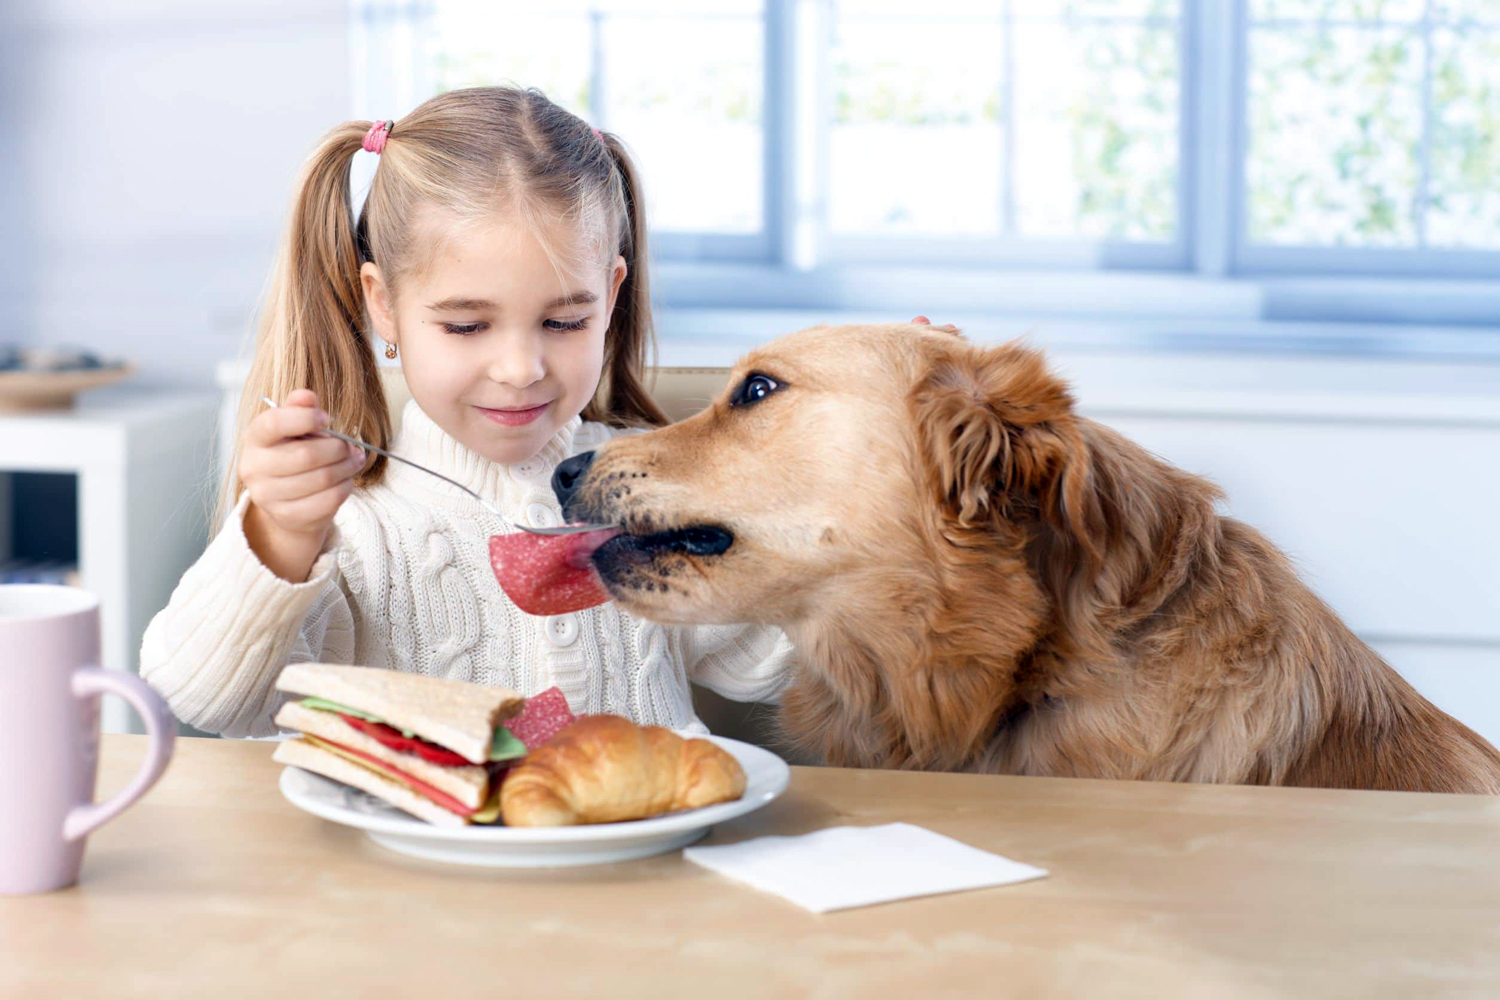 Чем нельзя кормить домашних животных: какие правила должен соблюдать хозяин питомца: новости, питомцы, питание, еда, ошибки, правила, домашние животные